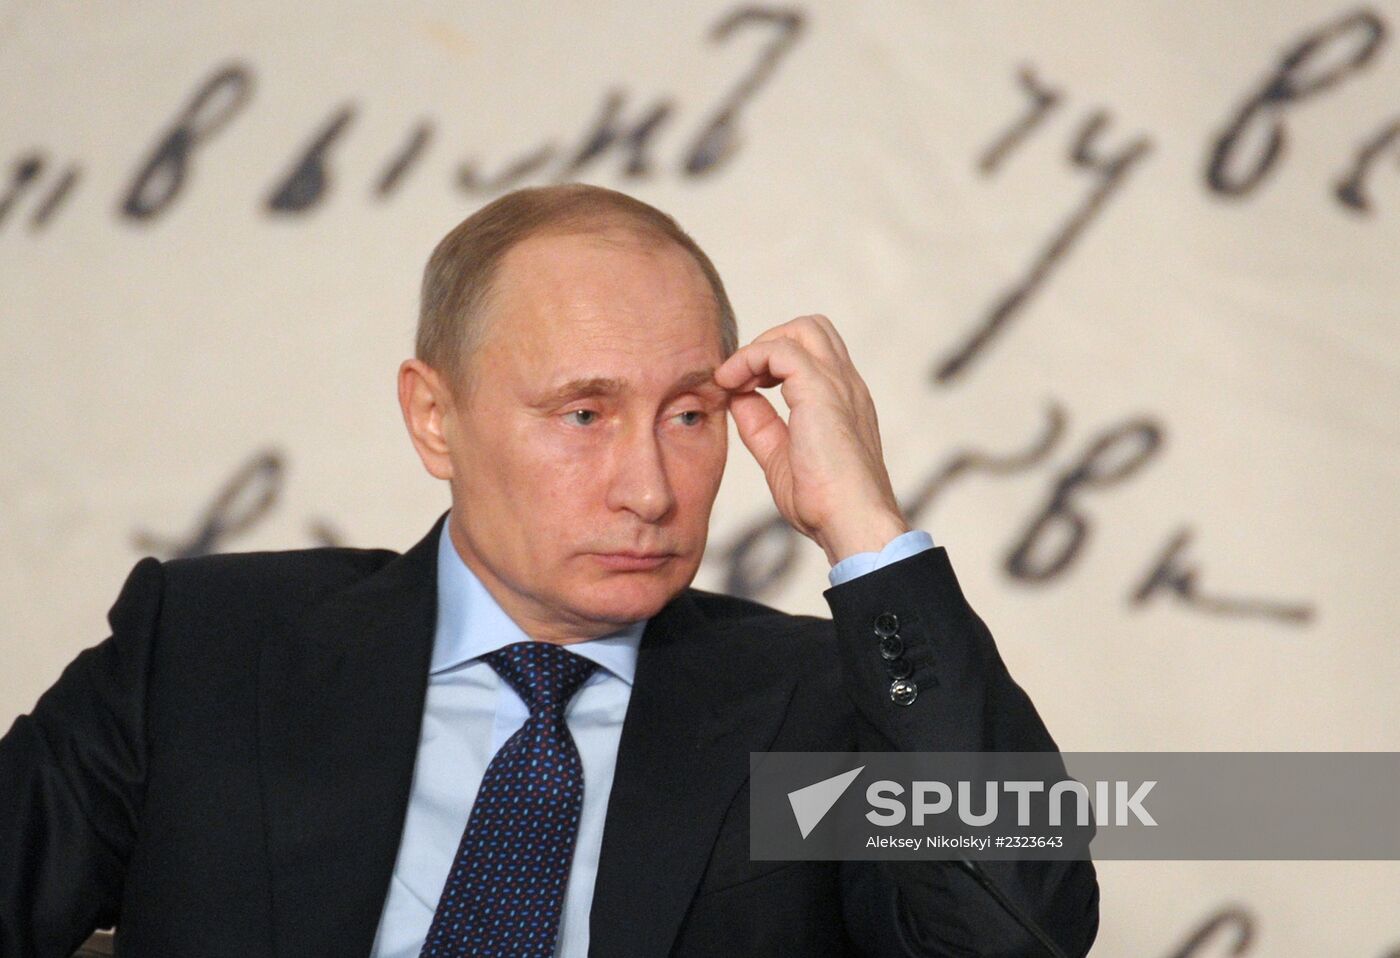 Vladimir Putin attends Russian literary assembly